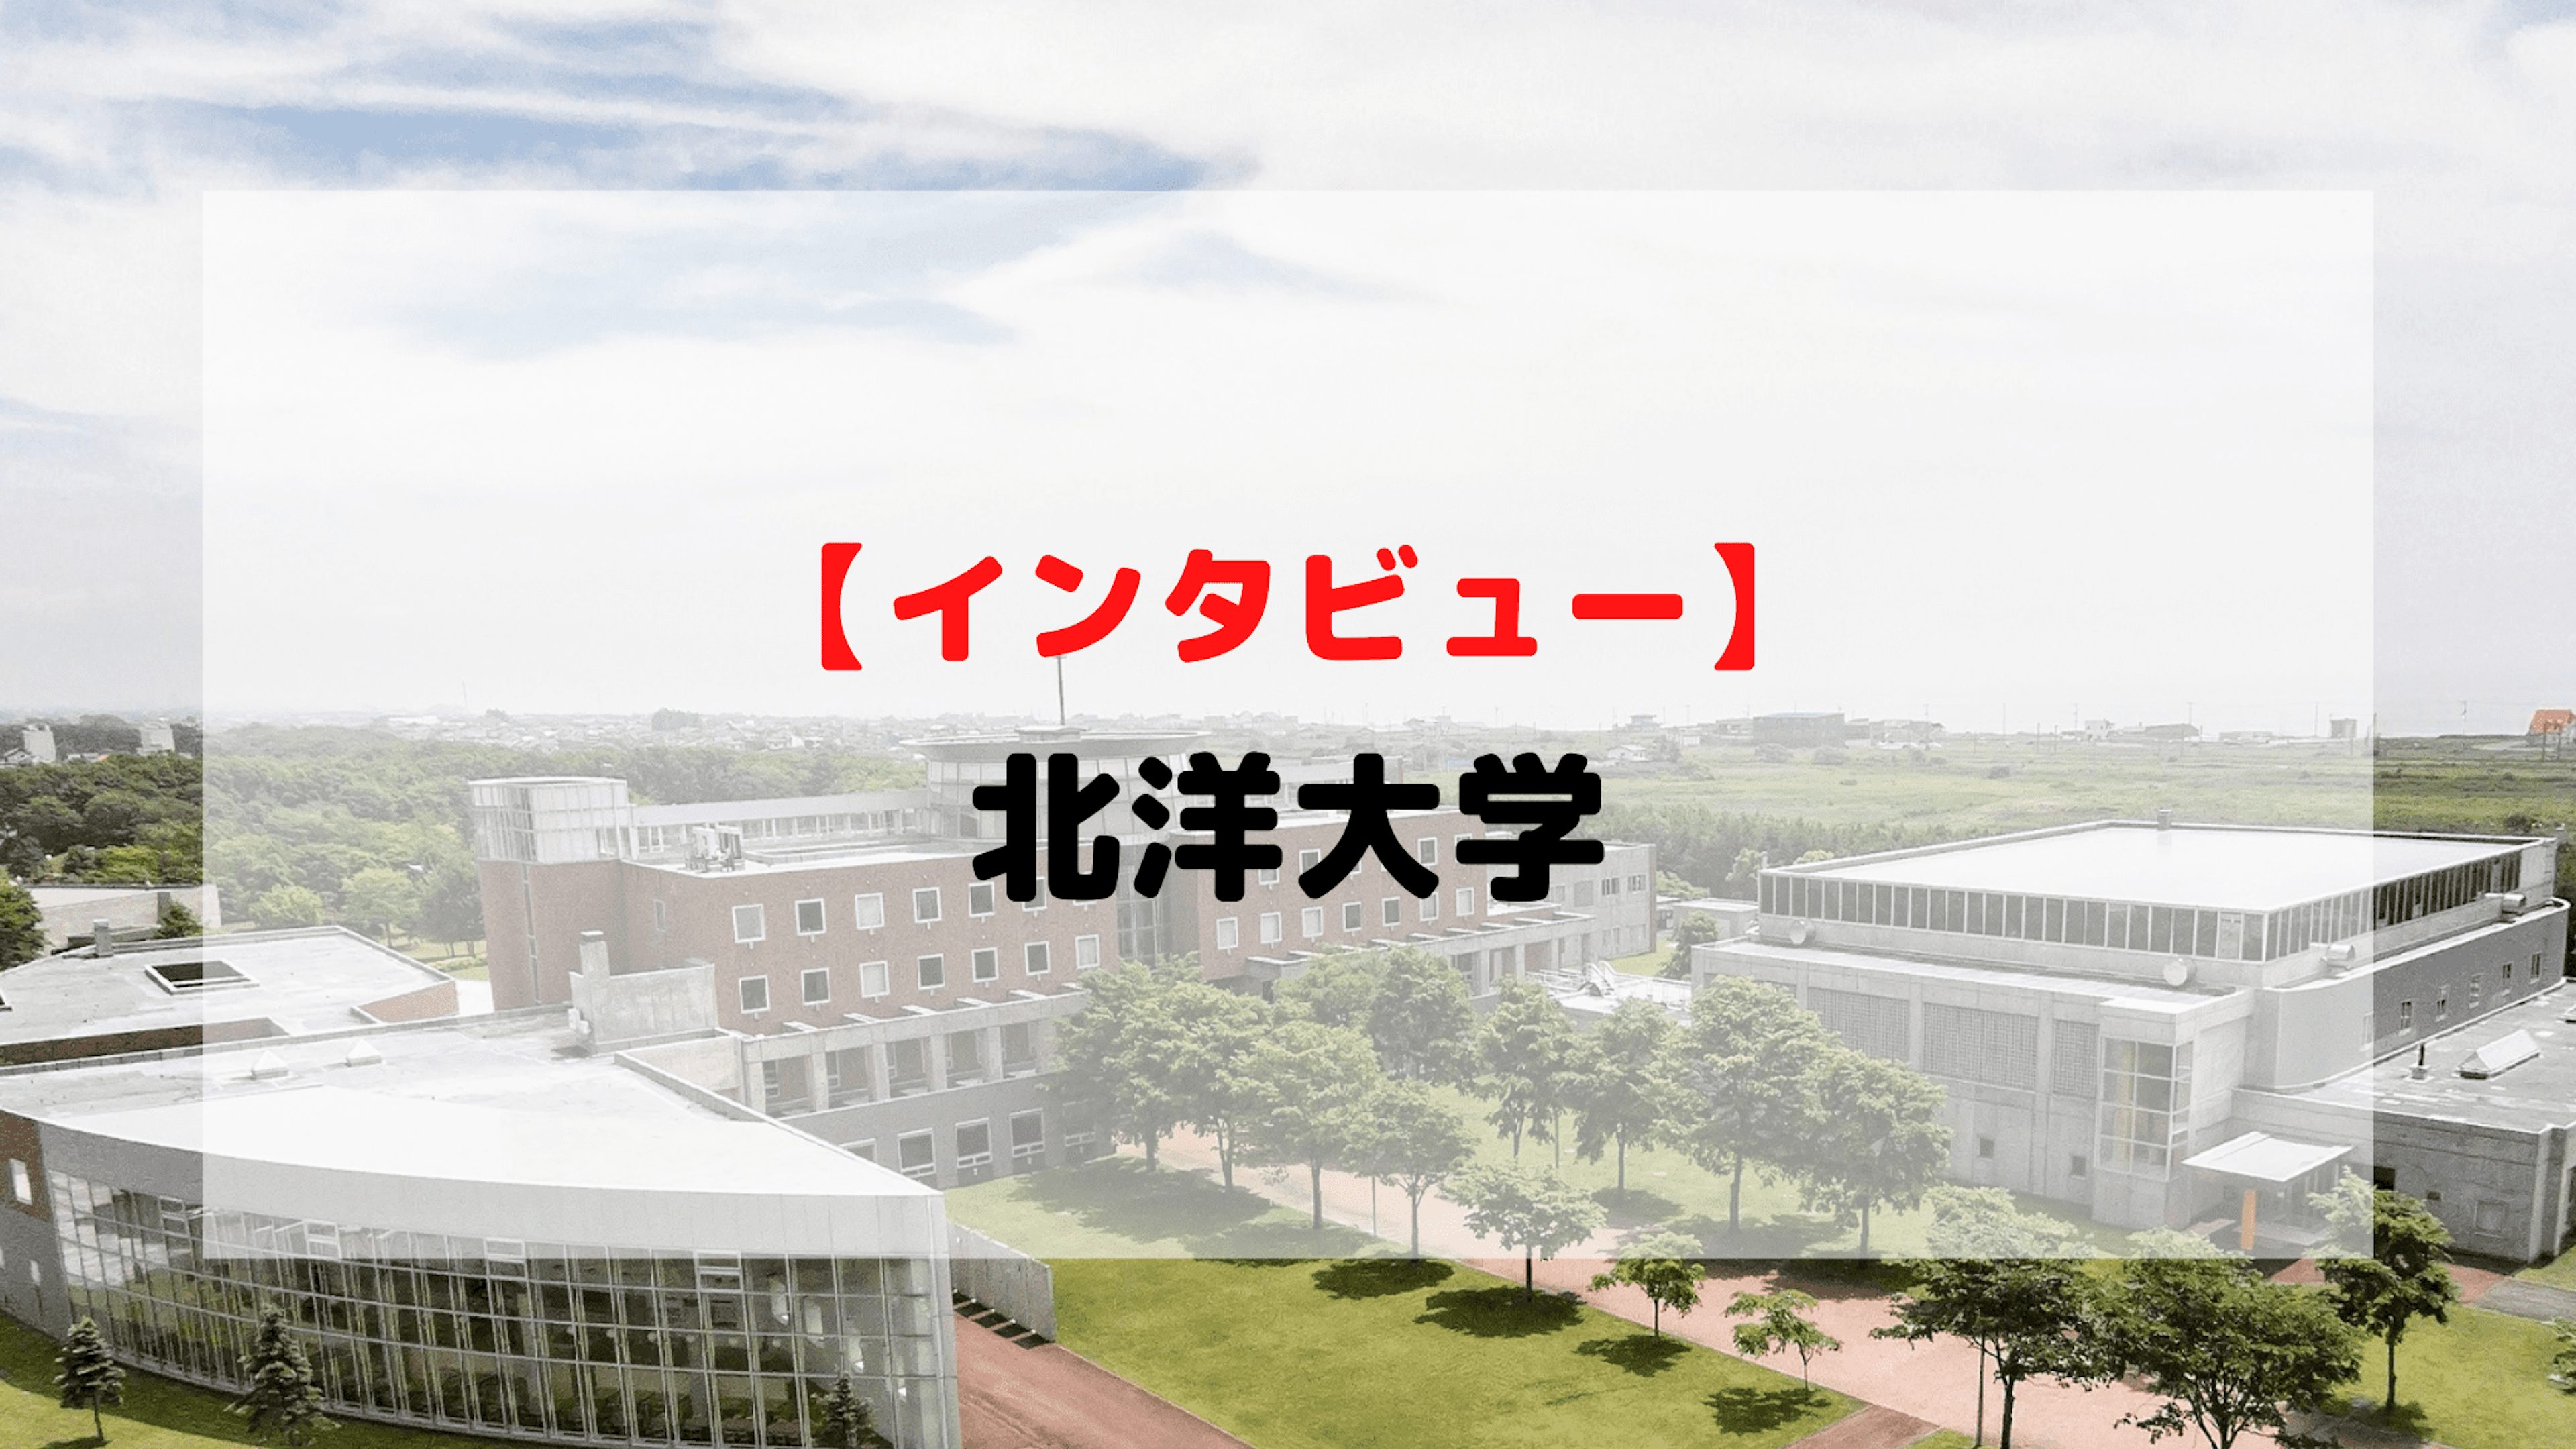 【インタビュー】北洋大学